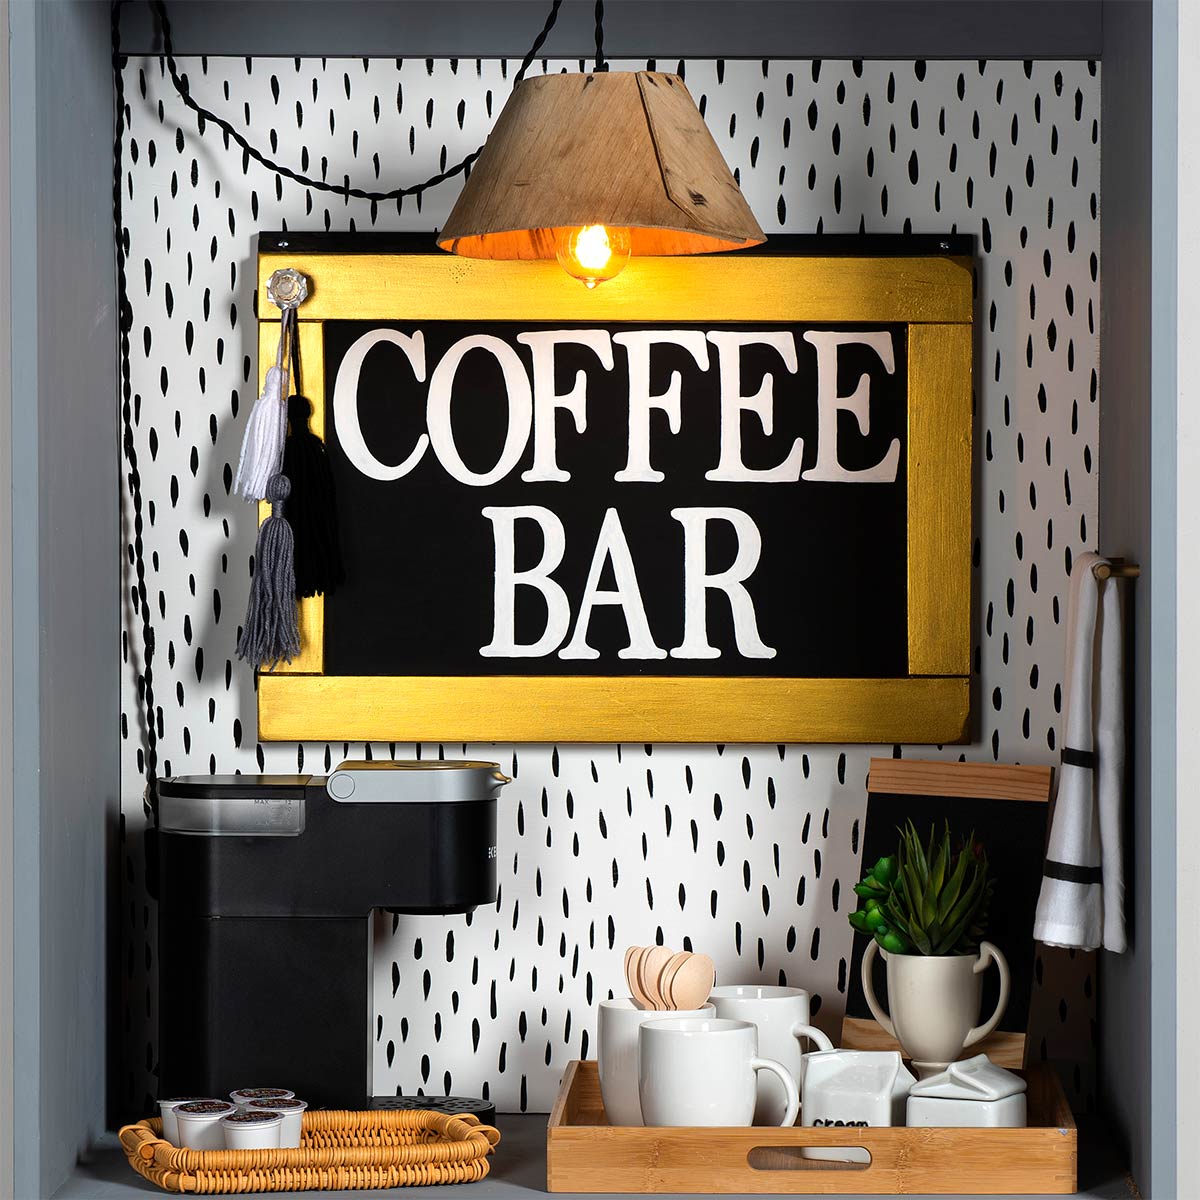 Upcycled Coffee Bar